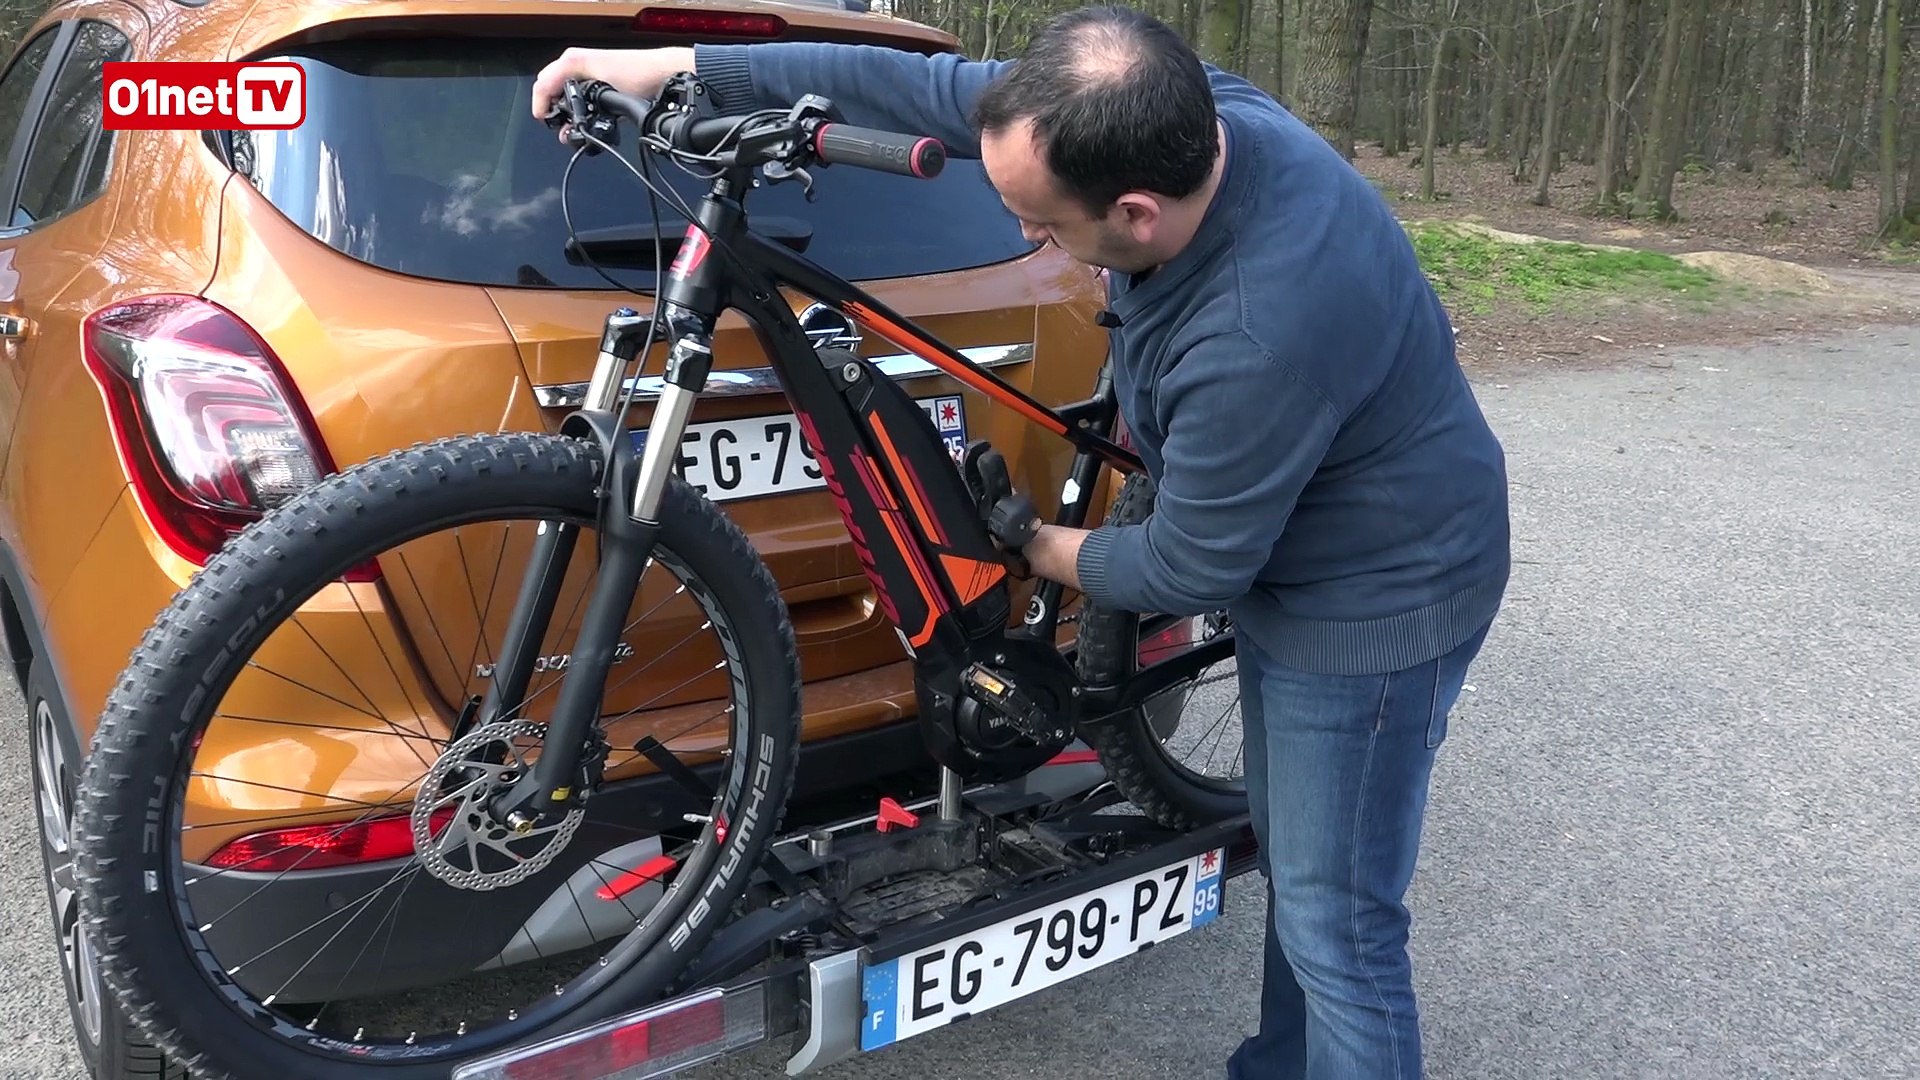 Avec FlexFix, Opel facilite la vie des fans de vélo - Vidéo Dailymotion